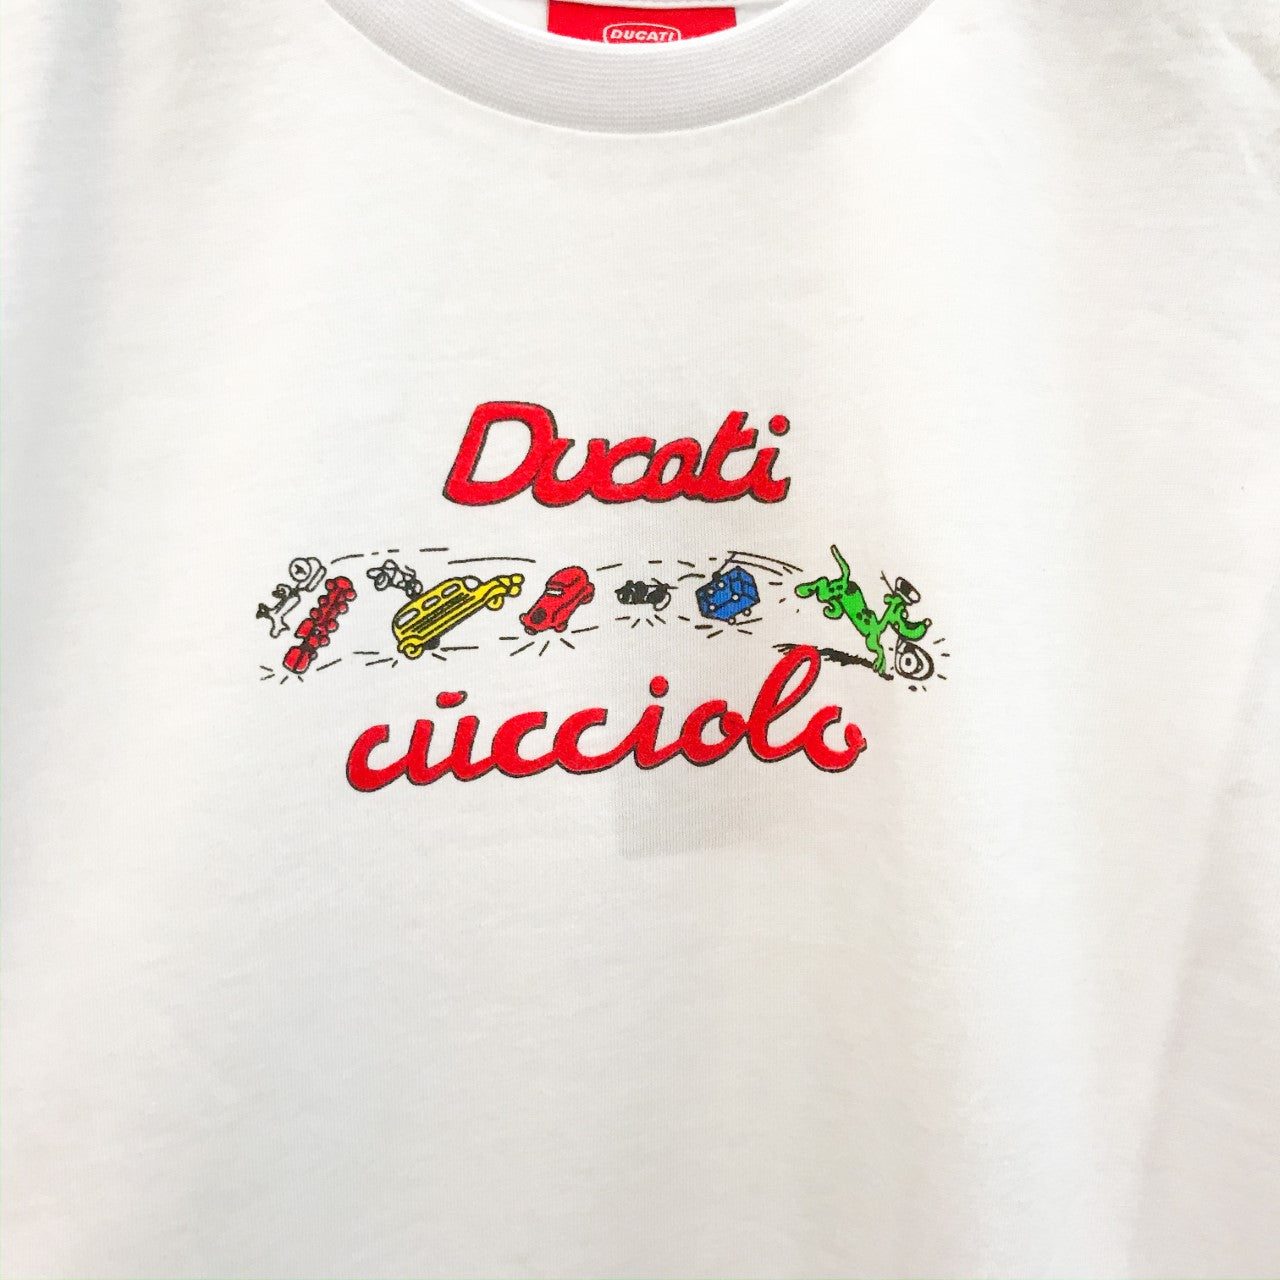 Ducati Cucciolo Kid's T-Shirt